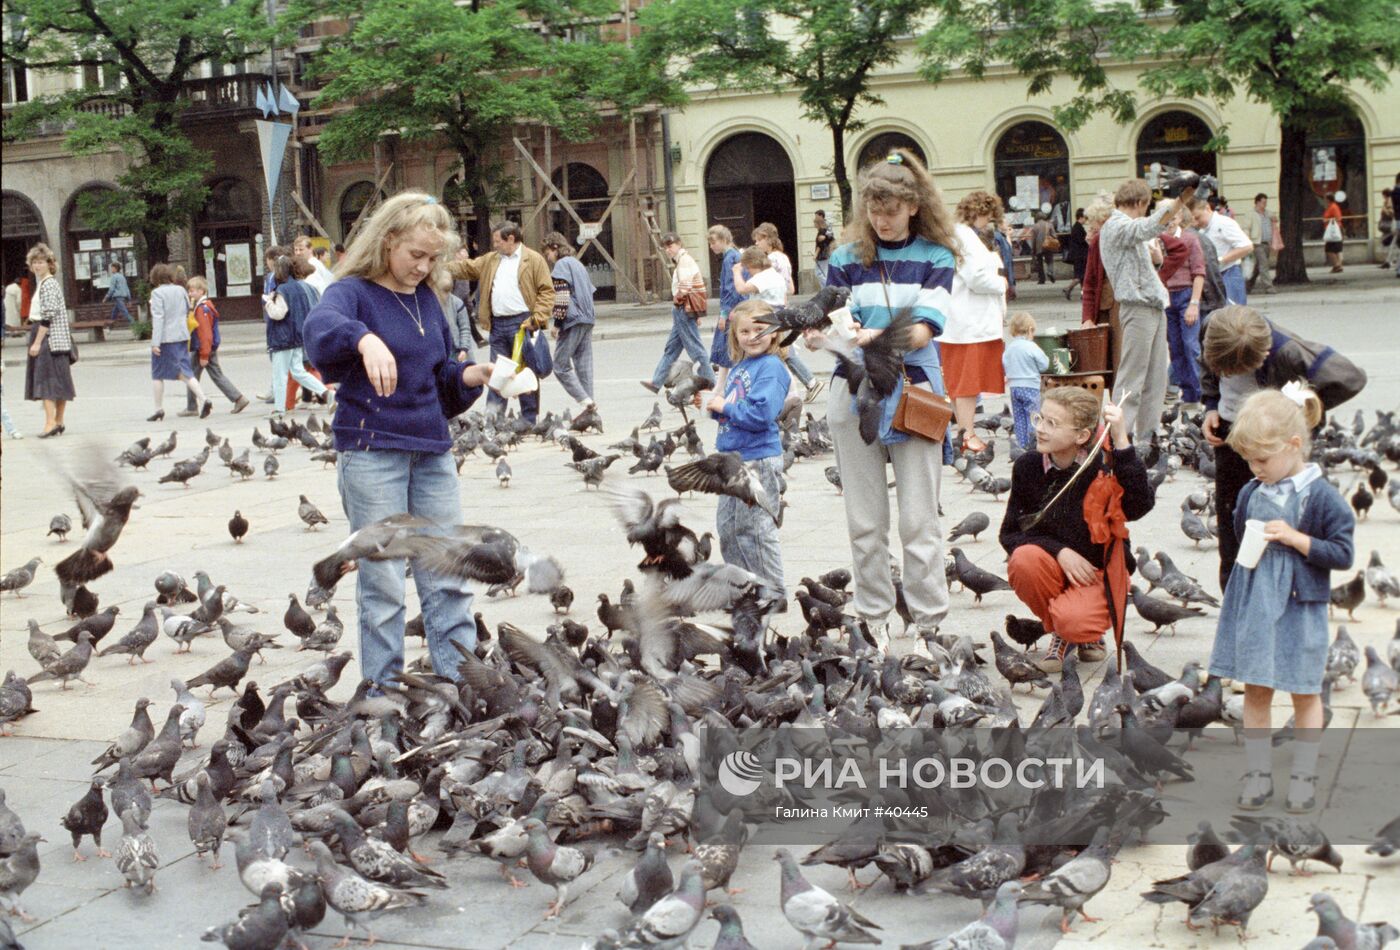 Дети кормят голубей на Рыночной площади в Кракове